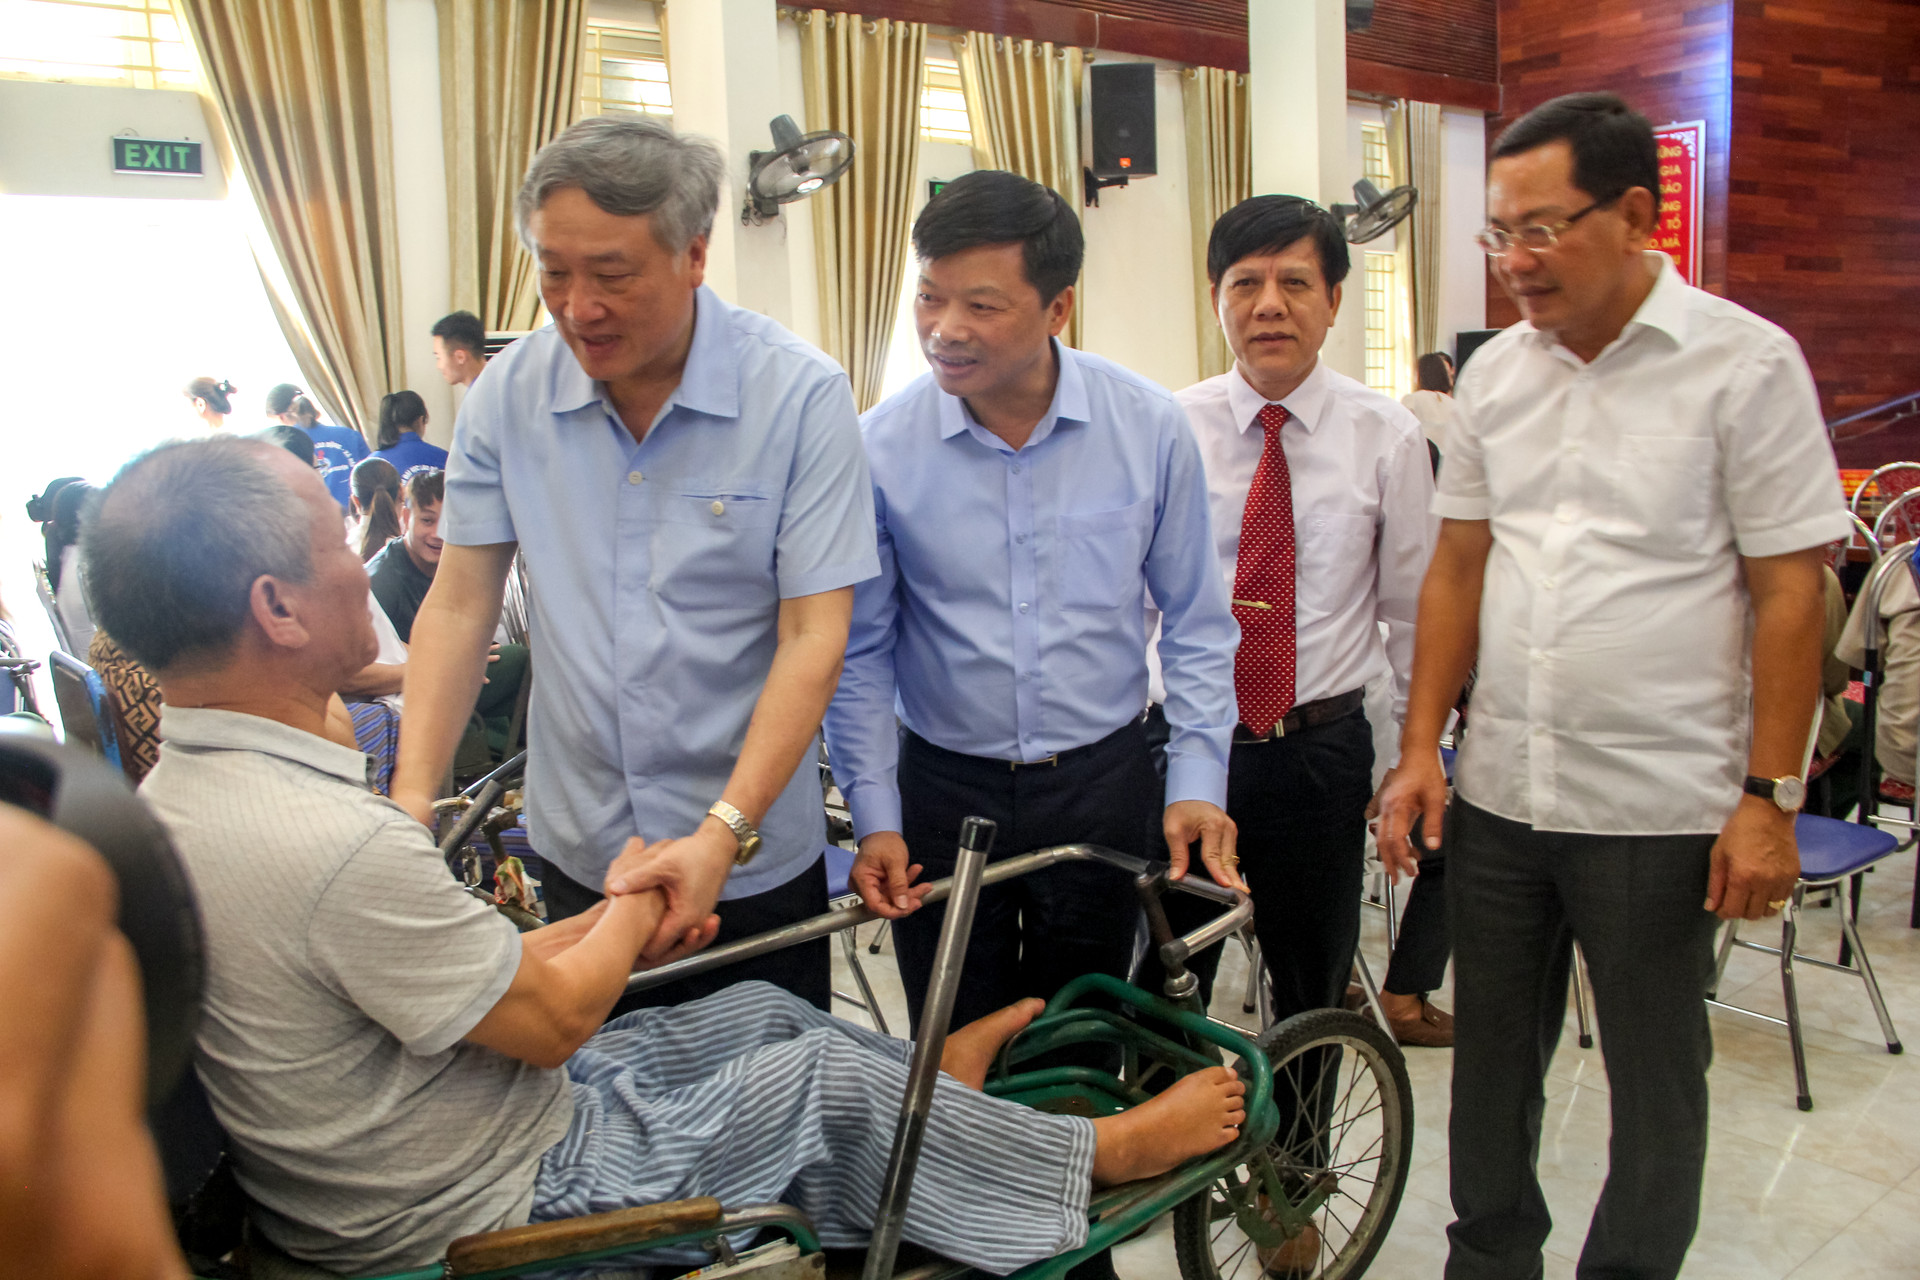 Chánh án TANDTC Nguyễn Hòa Bình thăm Trung tâm Điều dưỡng Thương binh Thuận Thành, Bắc Ninh